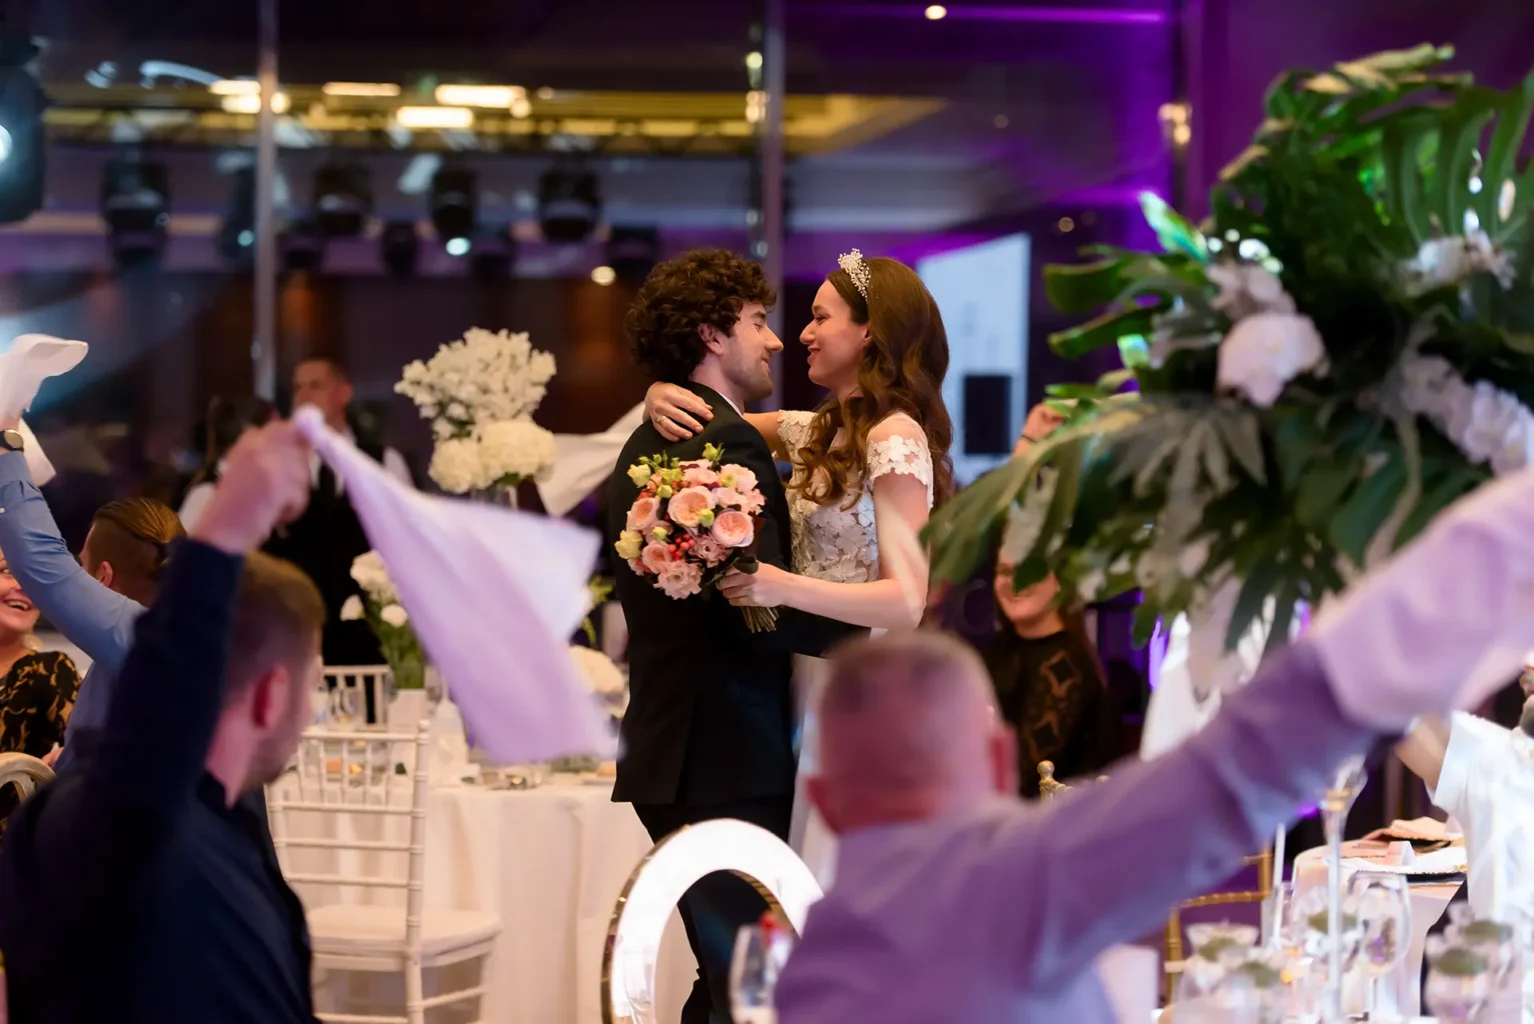 Rendezvényfotós - A Jegyesek napja, az esküvőjükre készülő jegyespároknak szól - esküvői szolgáltatók kiállítása (Budapest - Marriott Hotel)